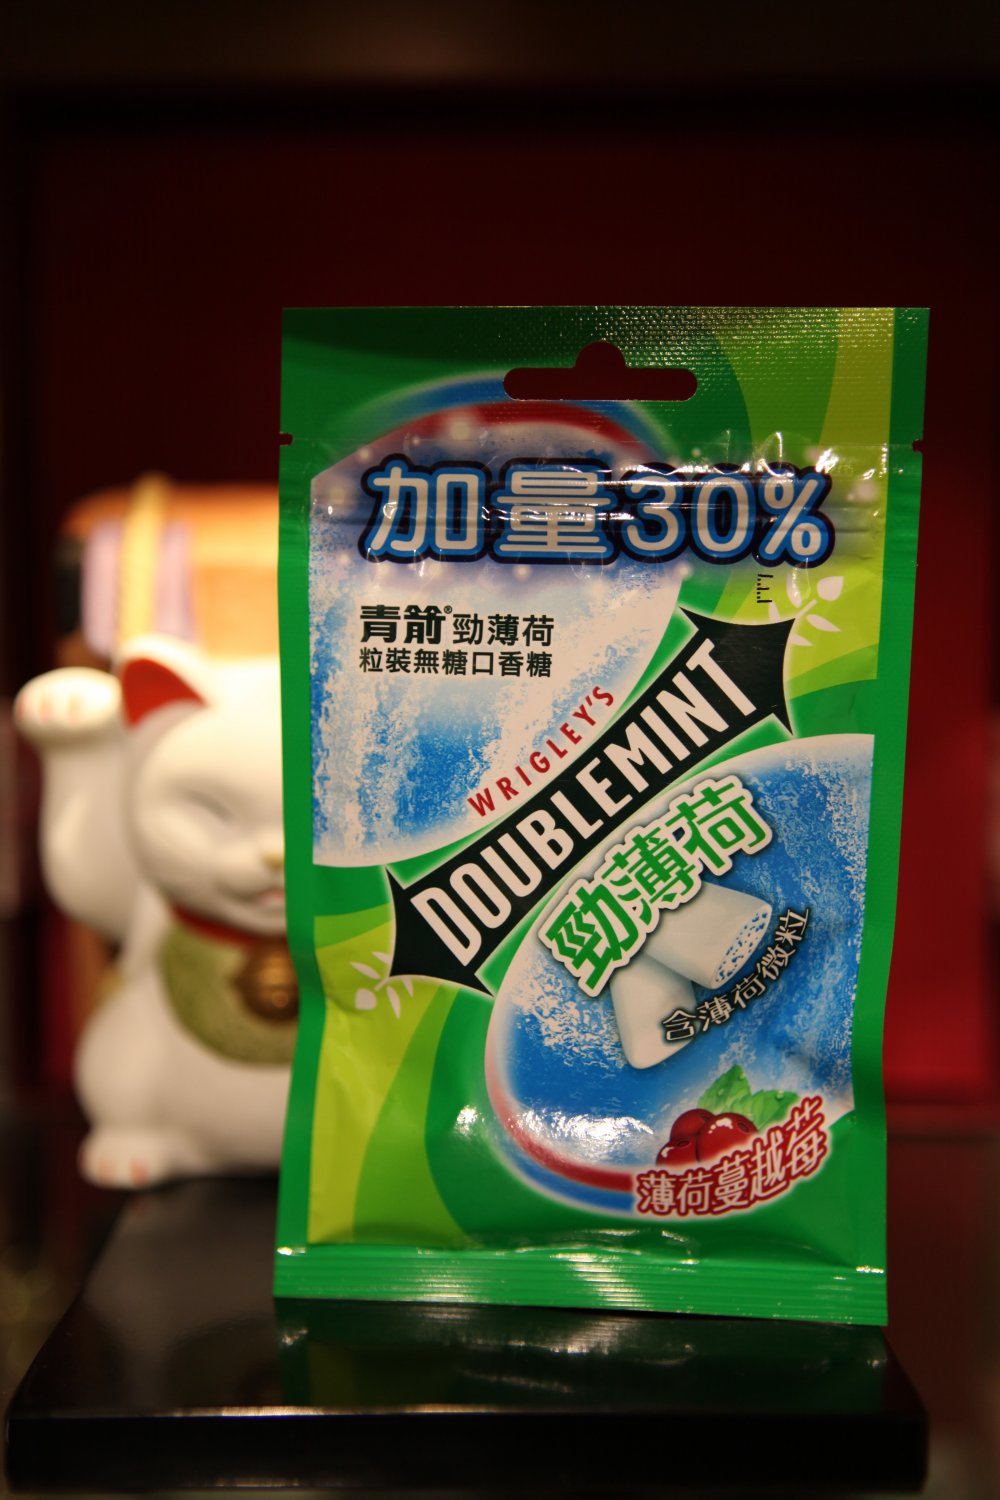 doublemint gum